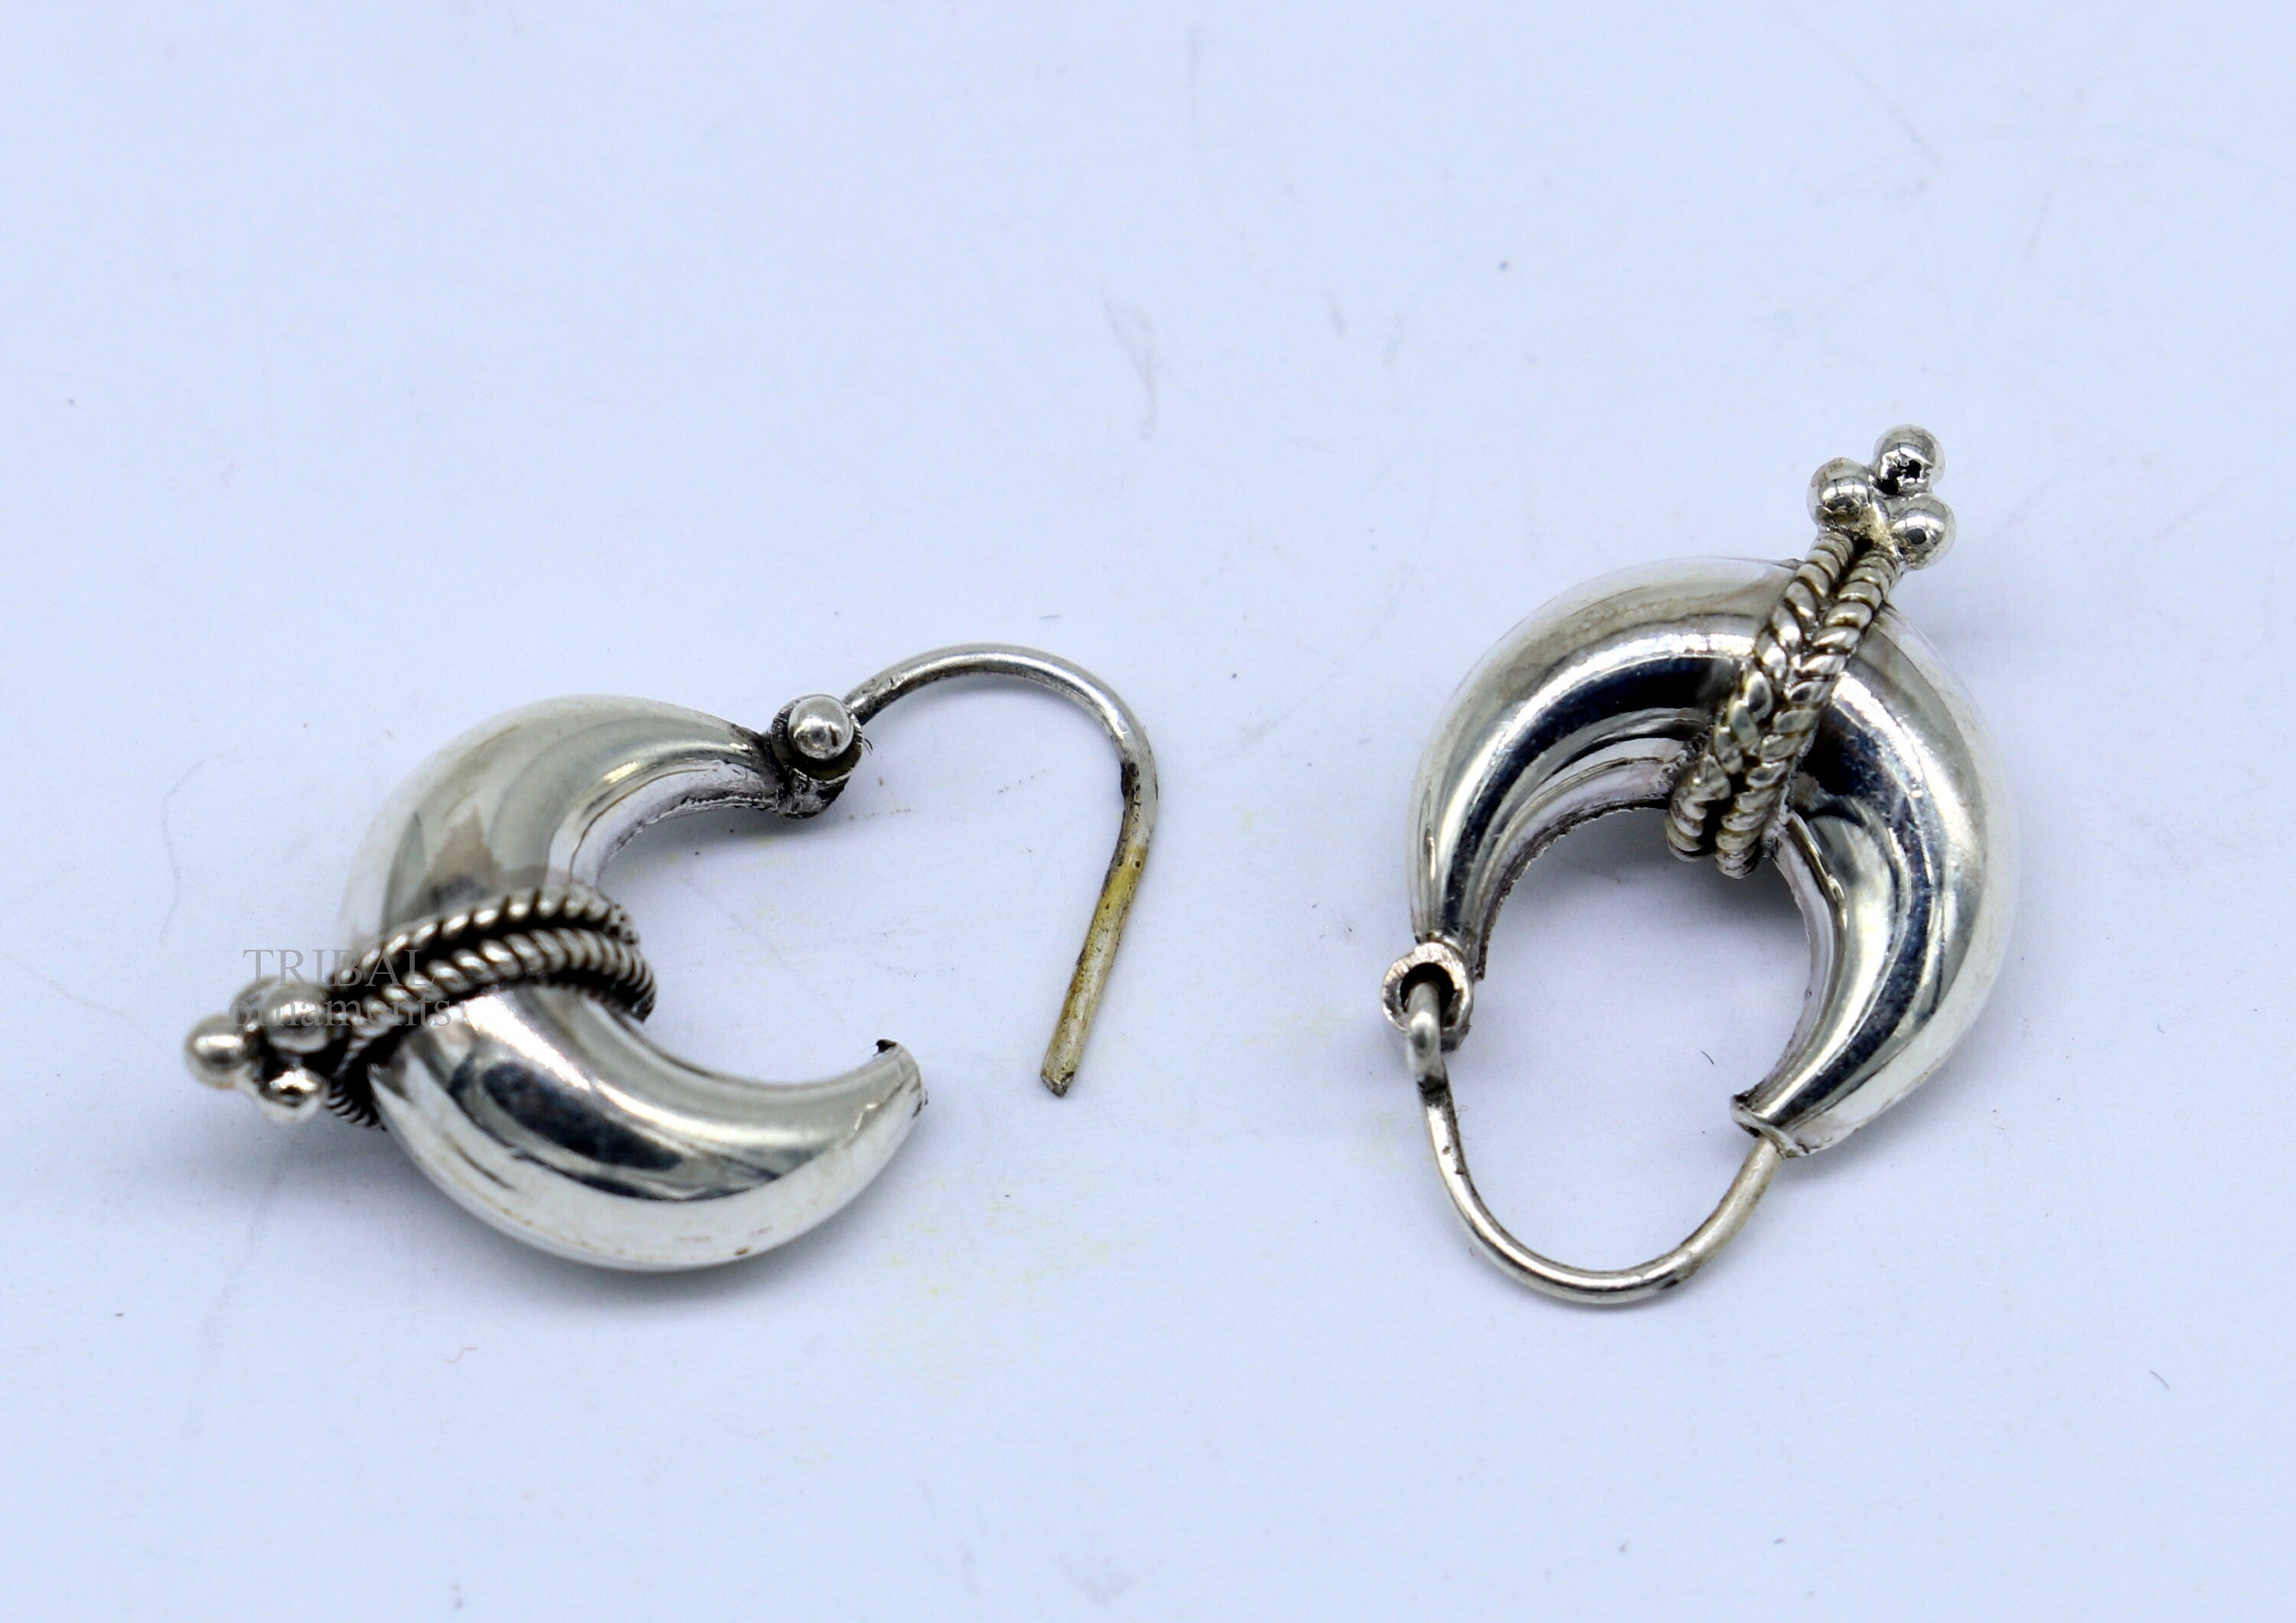 Buy Handmade Agate & Chrysoprase & Chalcedony Gemstone Wholesale Hook  Earring | Bezel Set Handmade Earring Jewelry | Gold Plated Bezel Dangle  Hook Earring | Gift For Her Bezel Set Pair | 1759)118 at Amazon.in